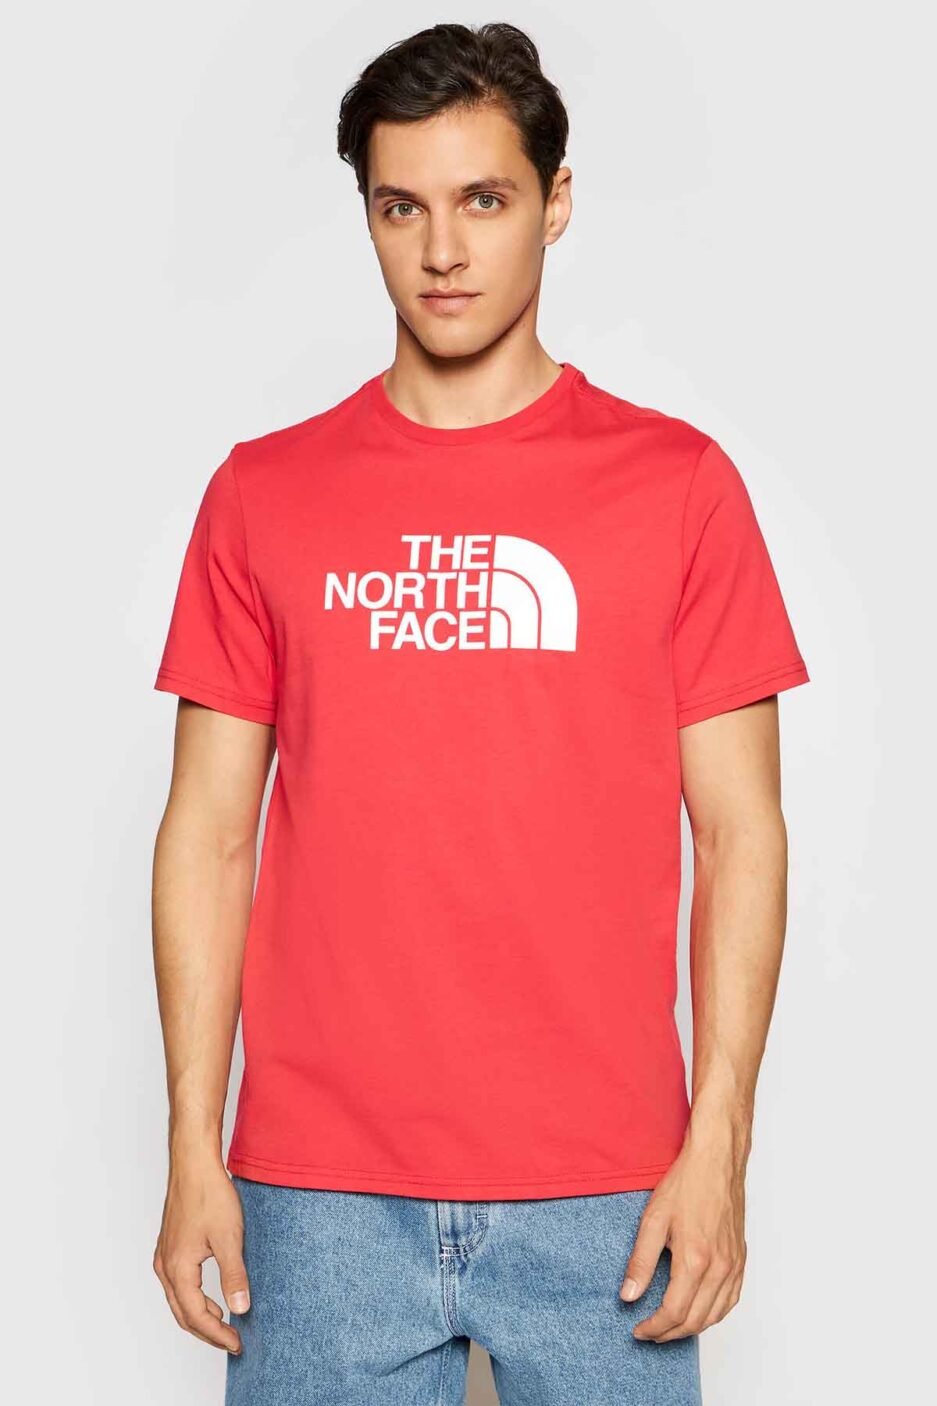 Camiseta de la marca The North Face Rojo